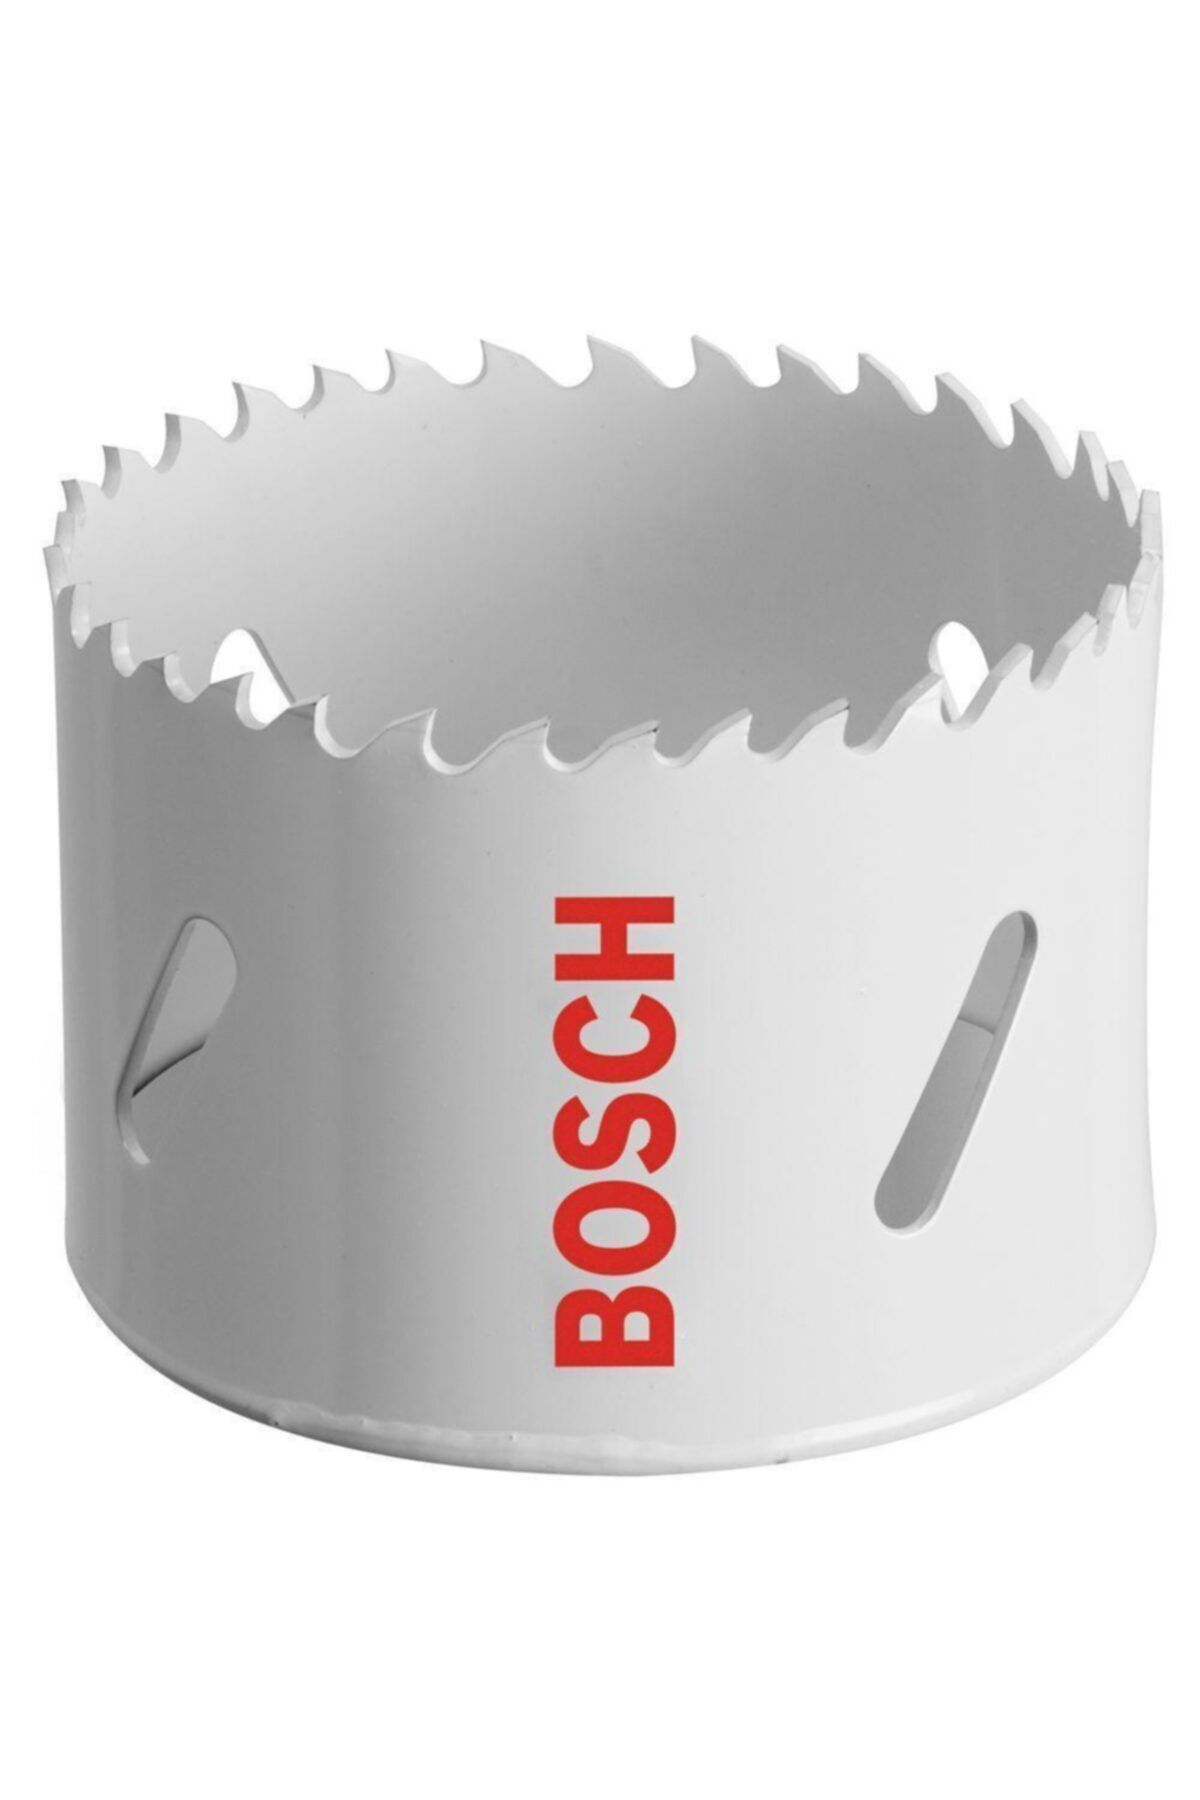 Bosch Bi Metal Panç 44 mm Metal Ahşap İçin